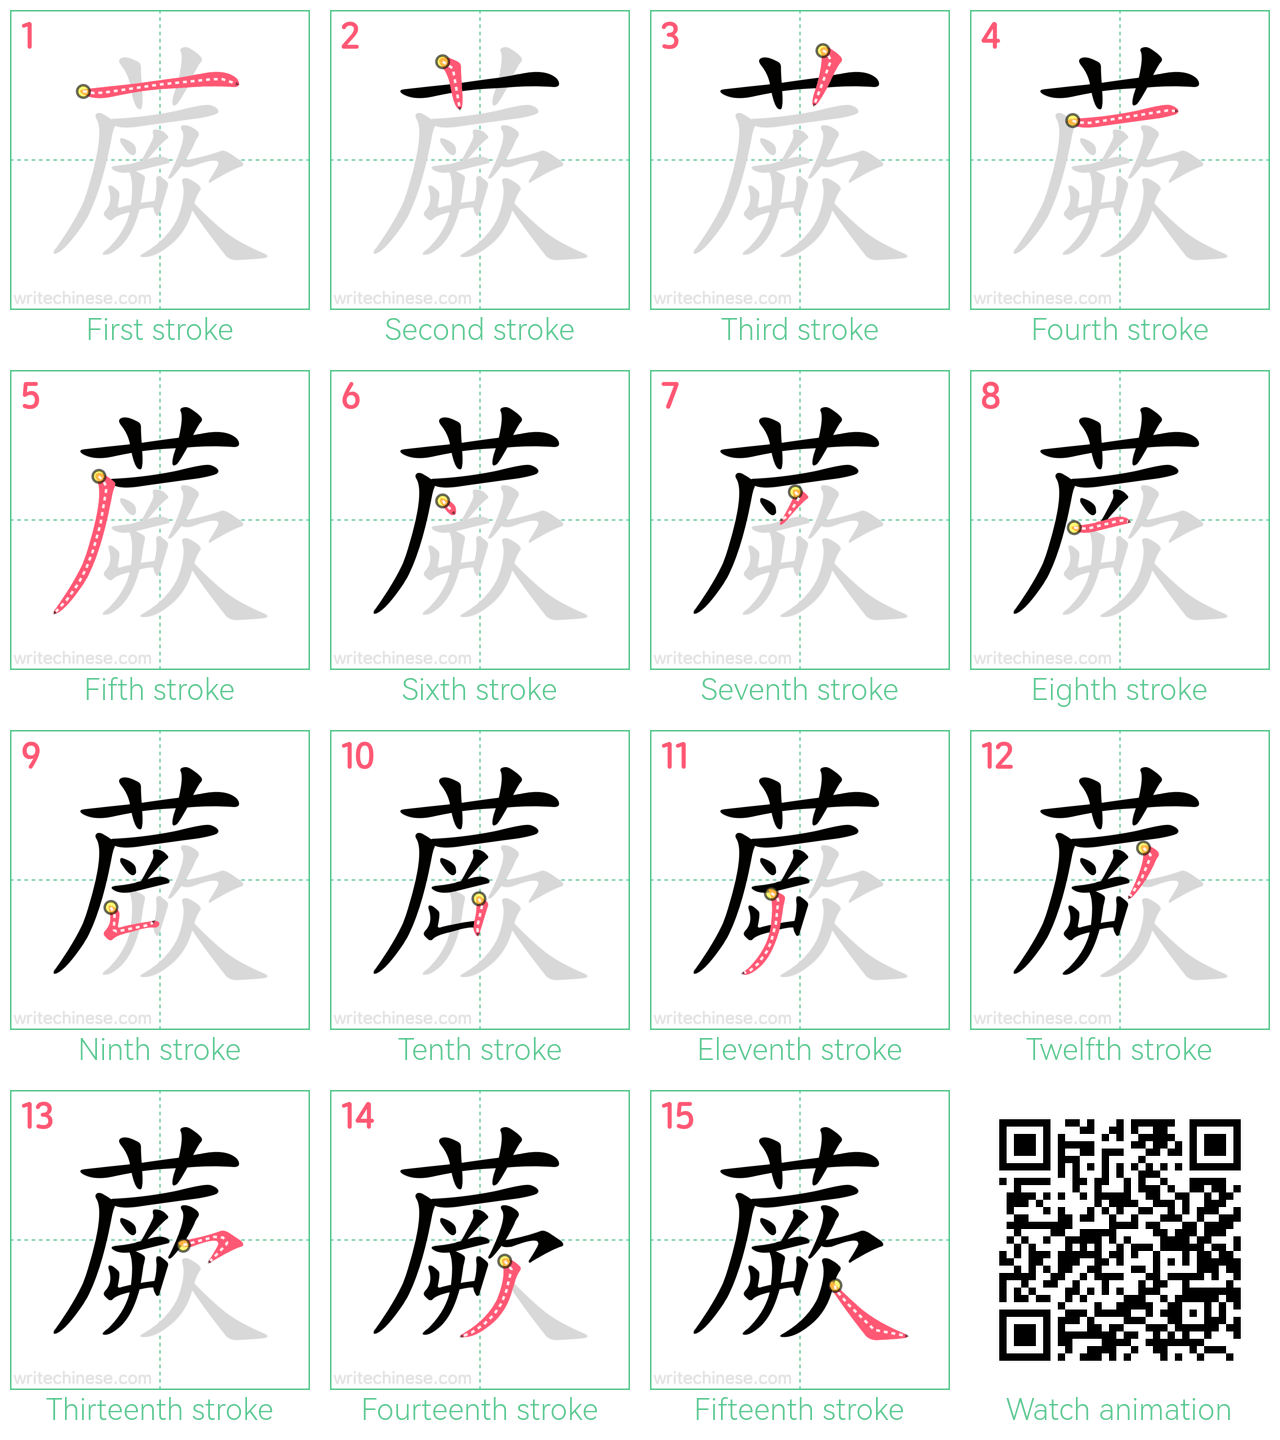 蕨 step-by-step stroke order diagrams